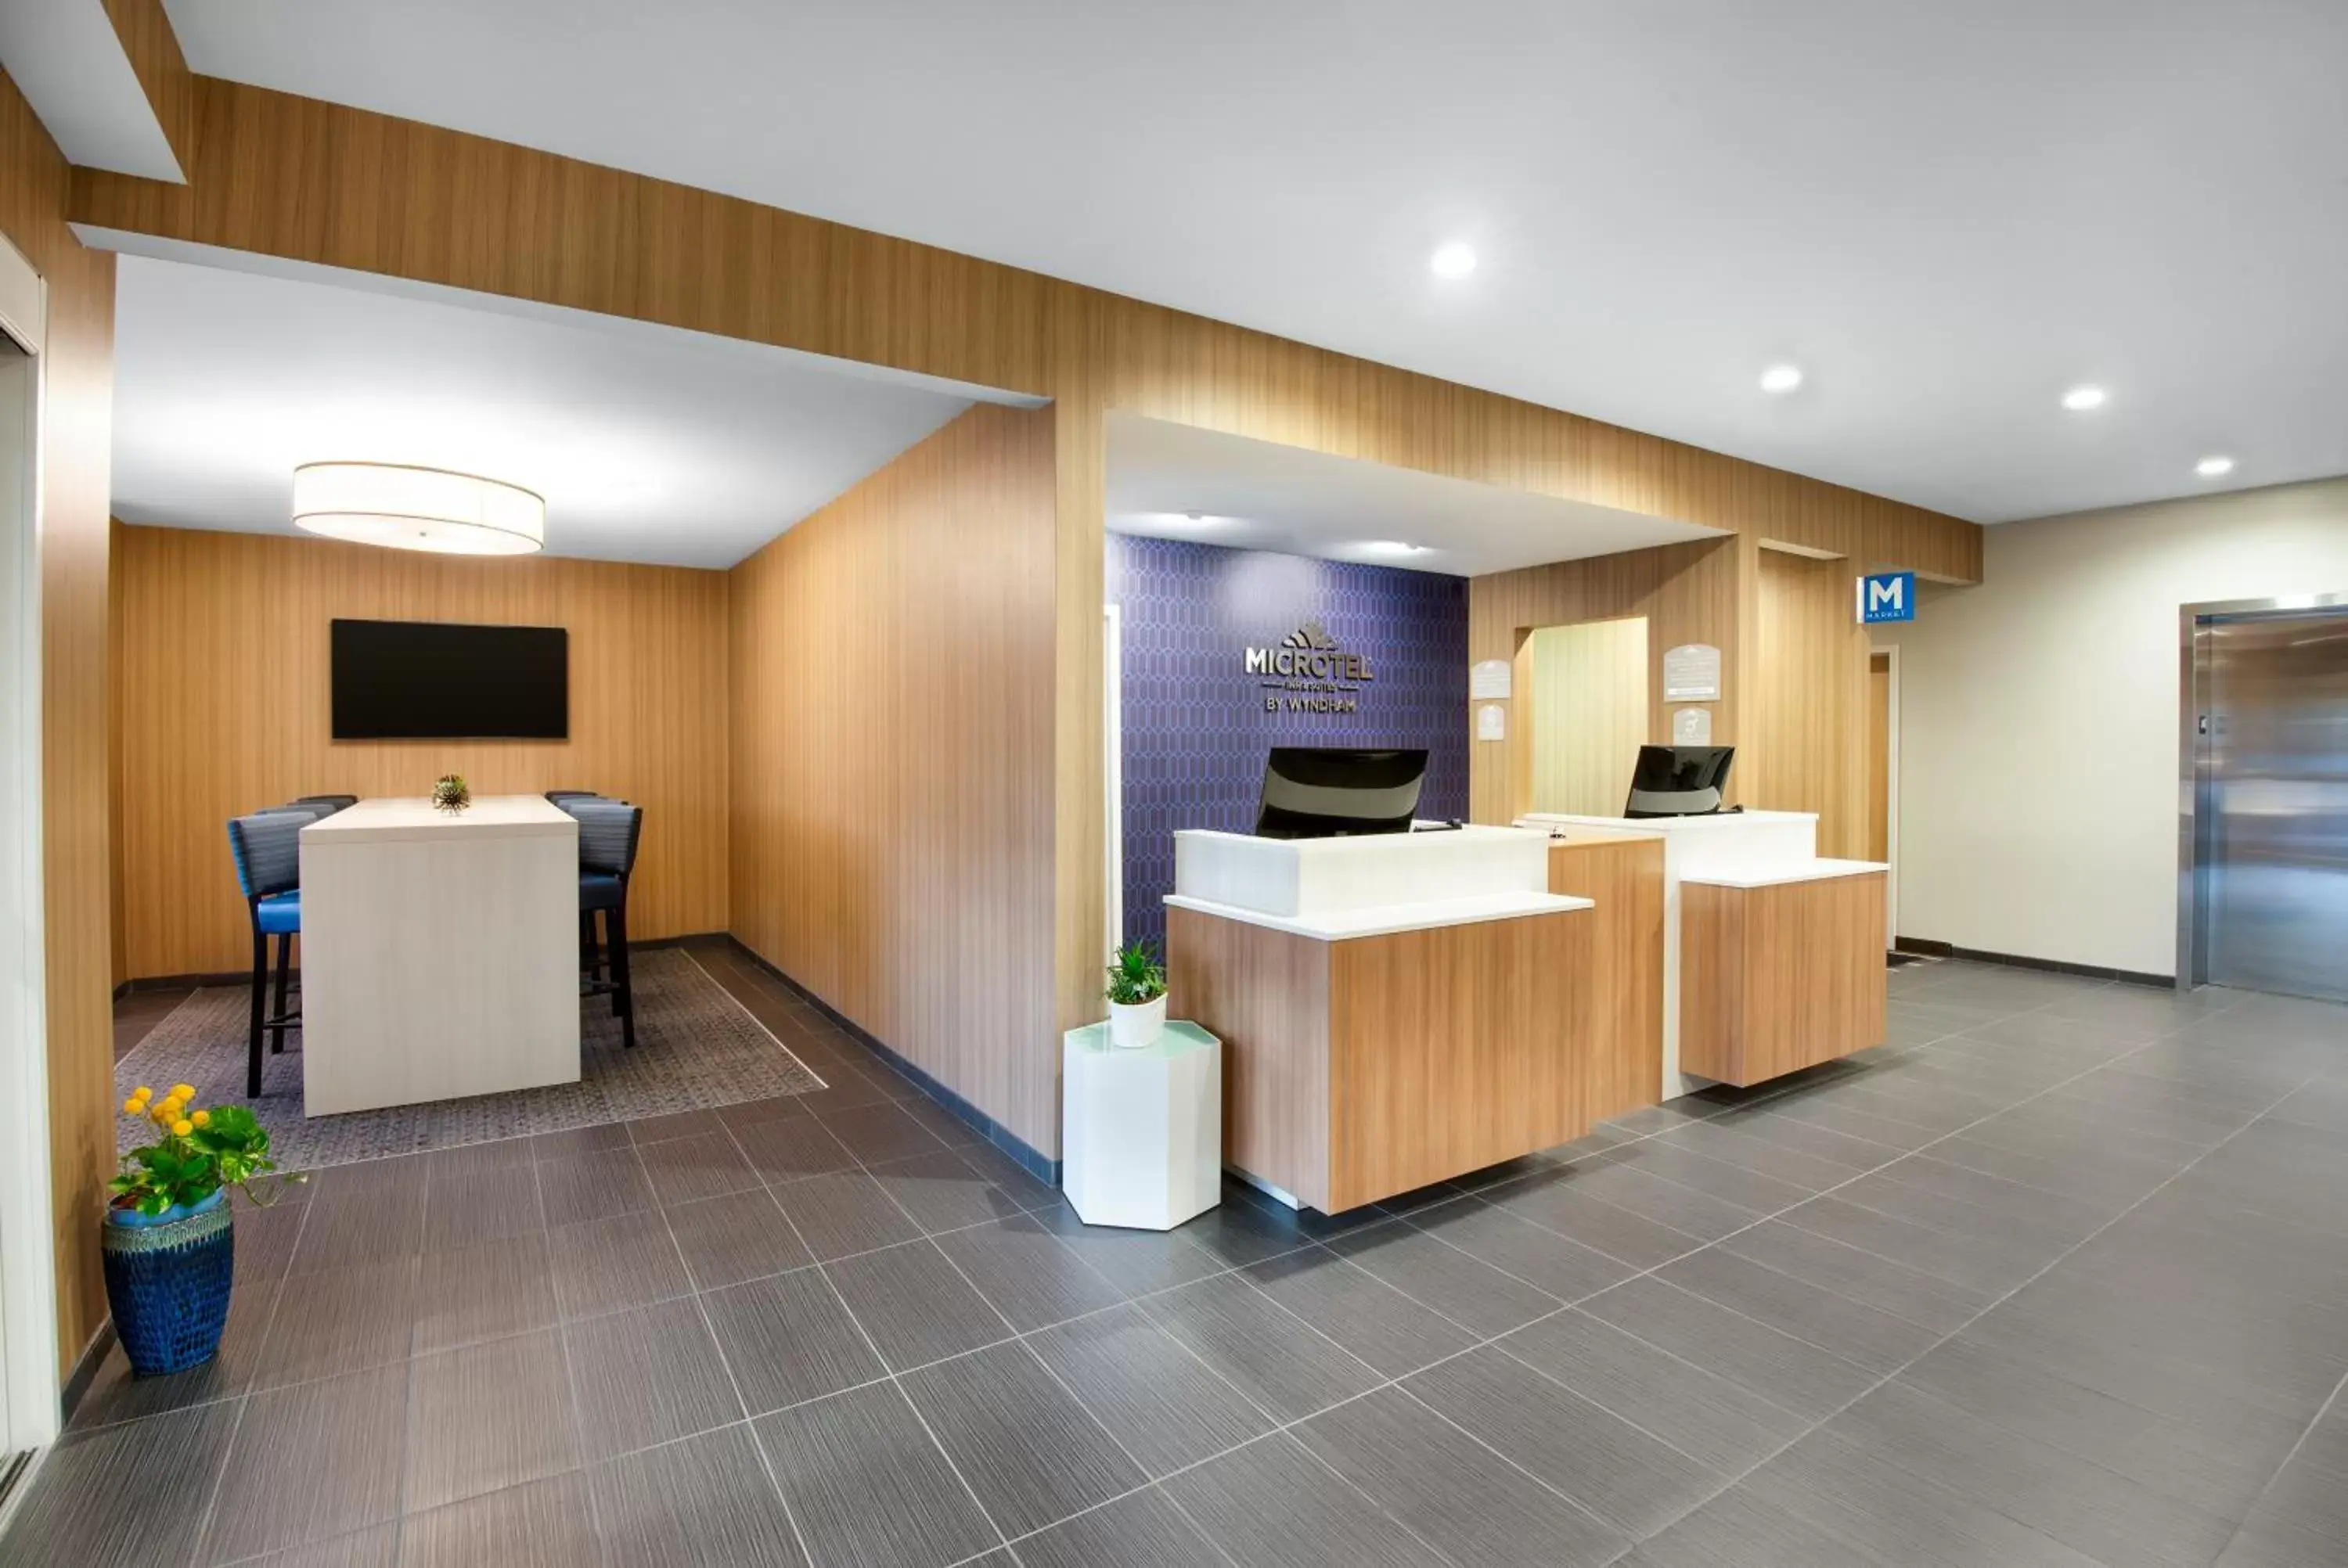 Lobby or reception, Lobby/Reception in Microtel Inn & Suites by Wyndham Farmington